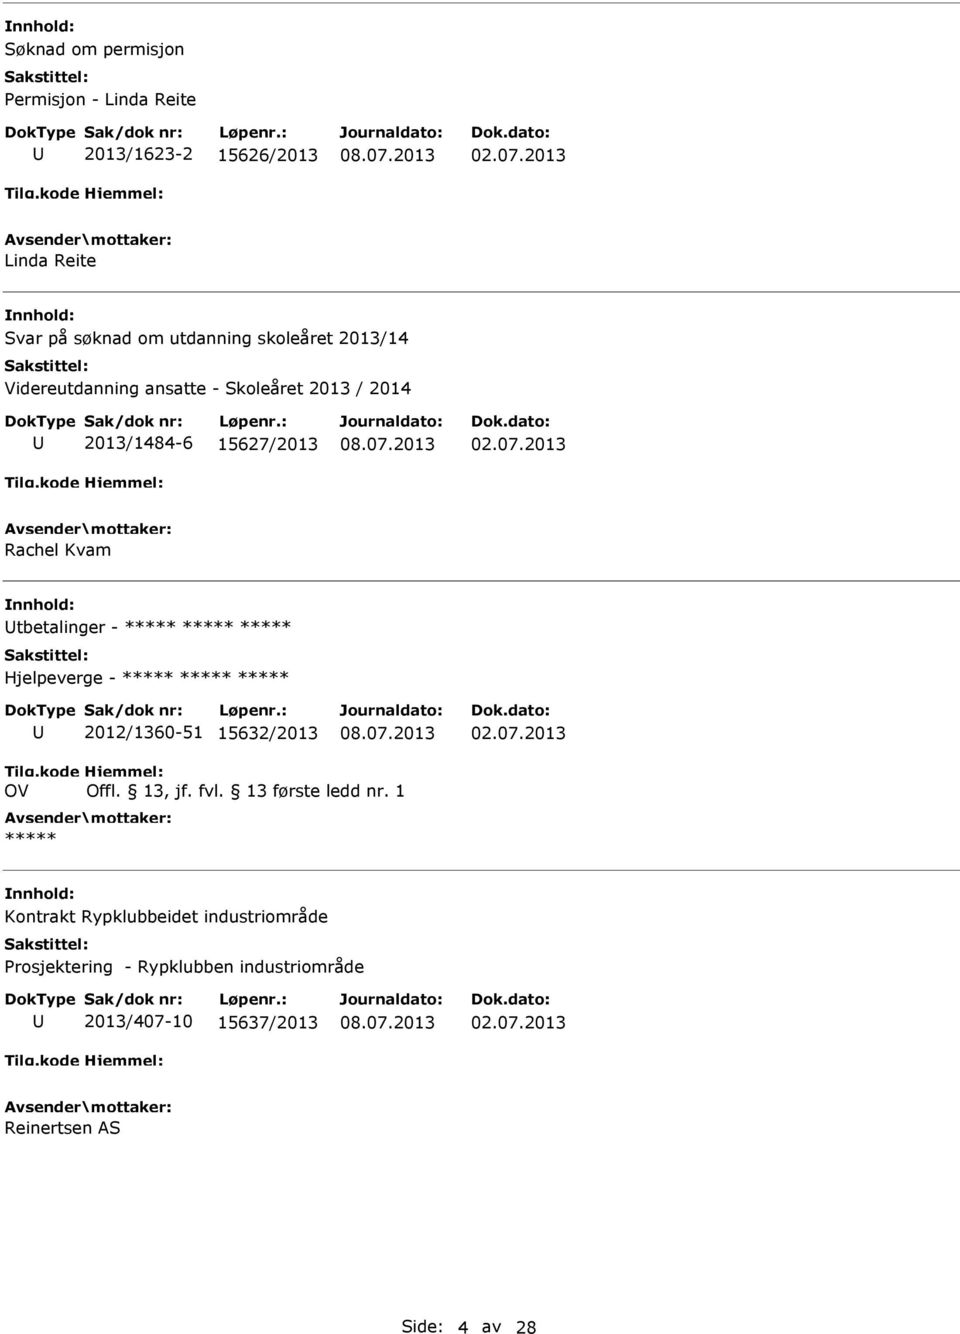 15627/2013 Rachel Kvam tbetalinger - Hjelpeverge - 2012/1360-51 15632/2013 OV Kontrakt